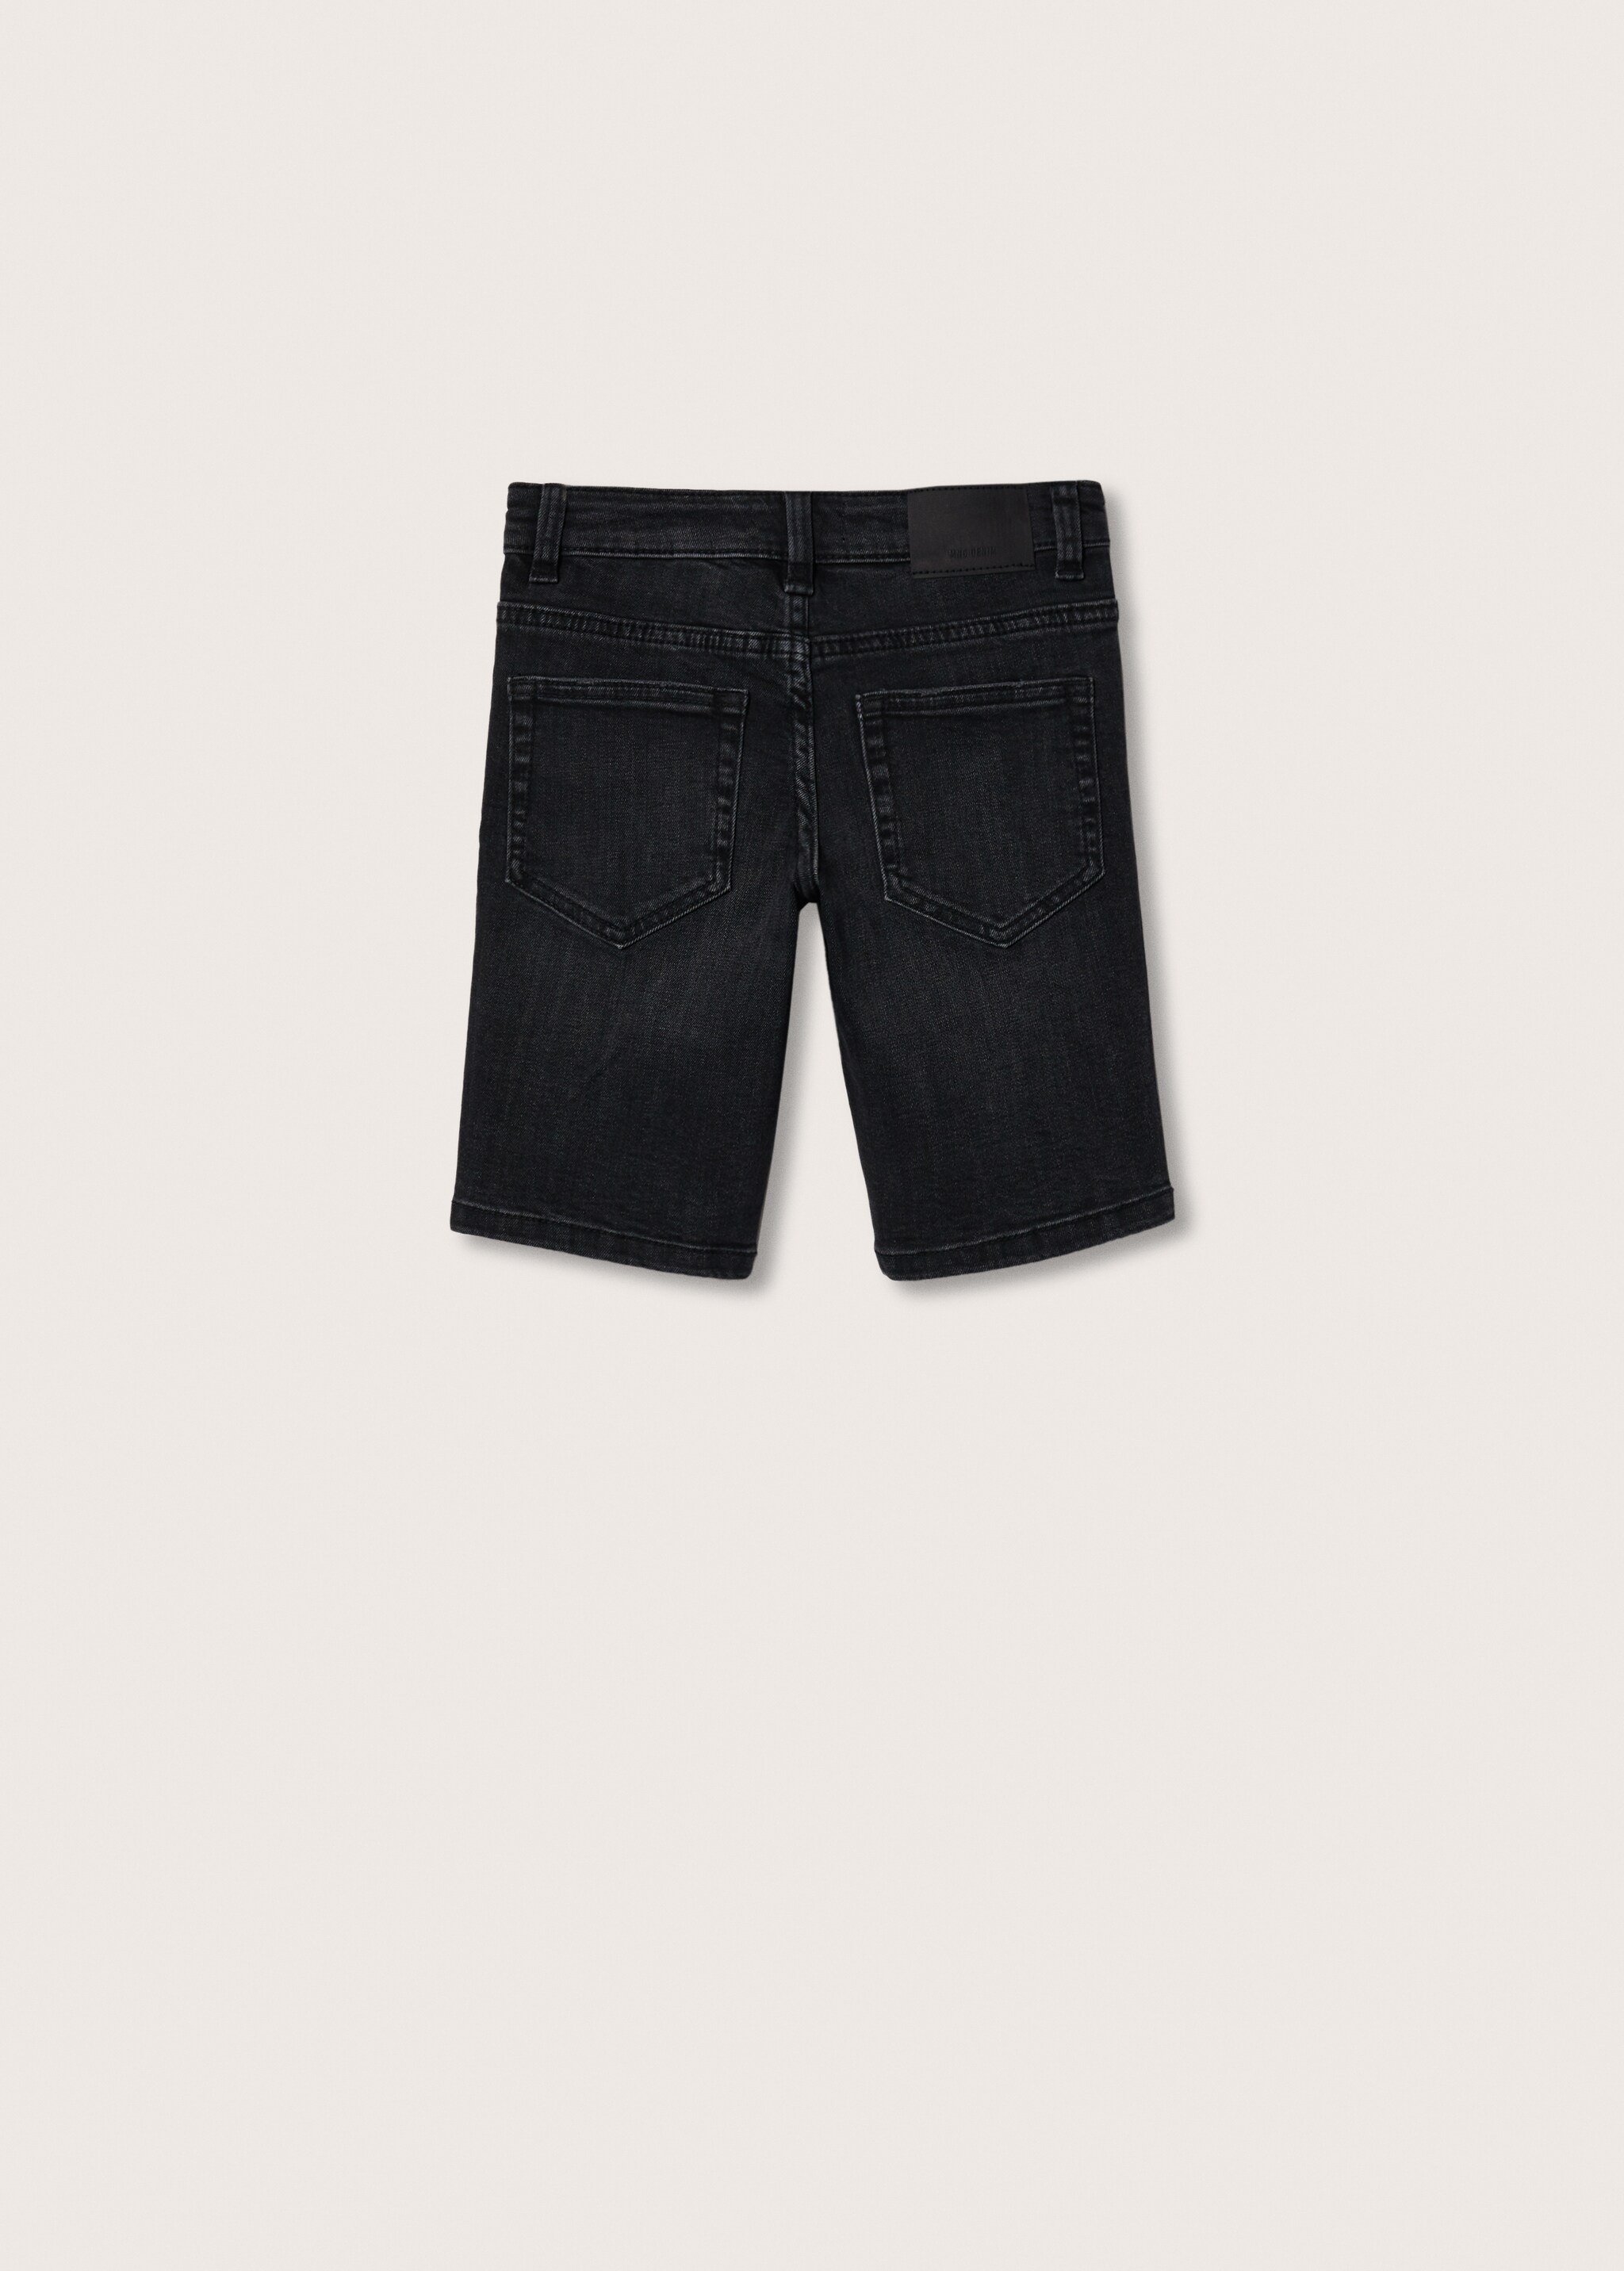 Jeans-Bermudashorts aus Baumwolle - Rückseite des Artikels